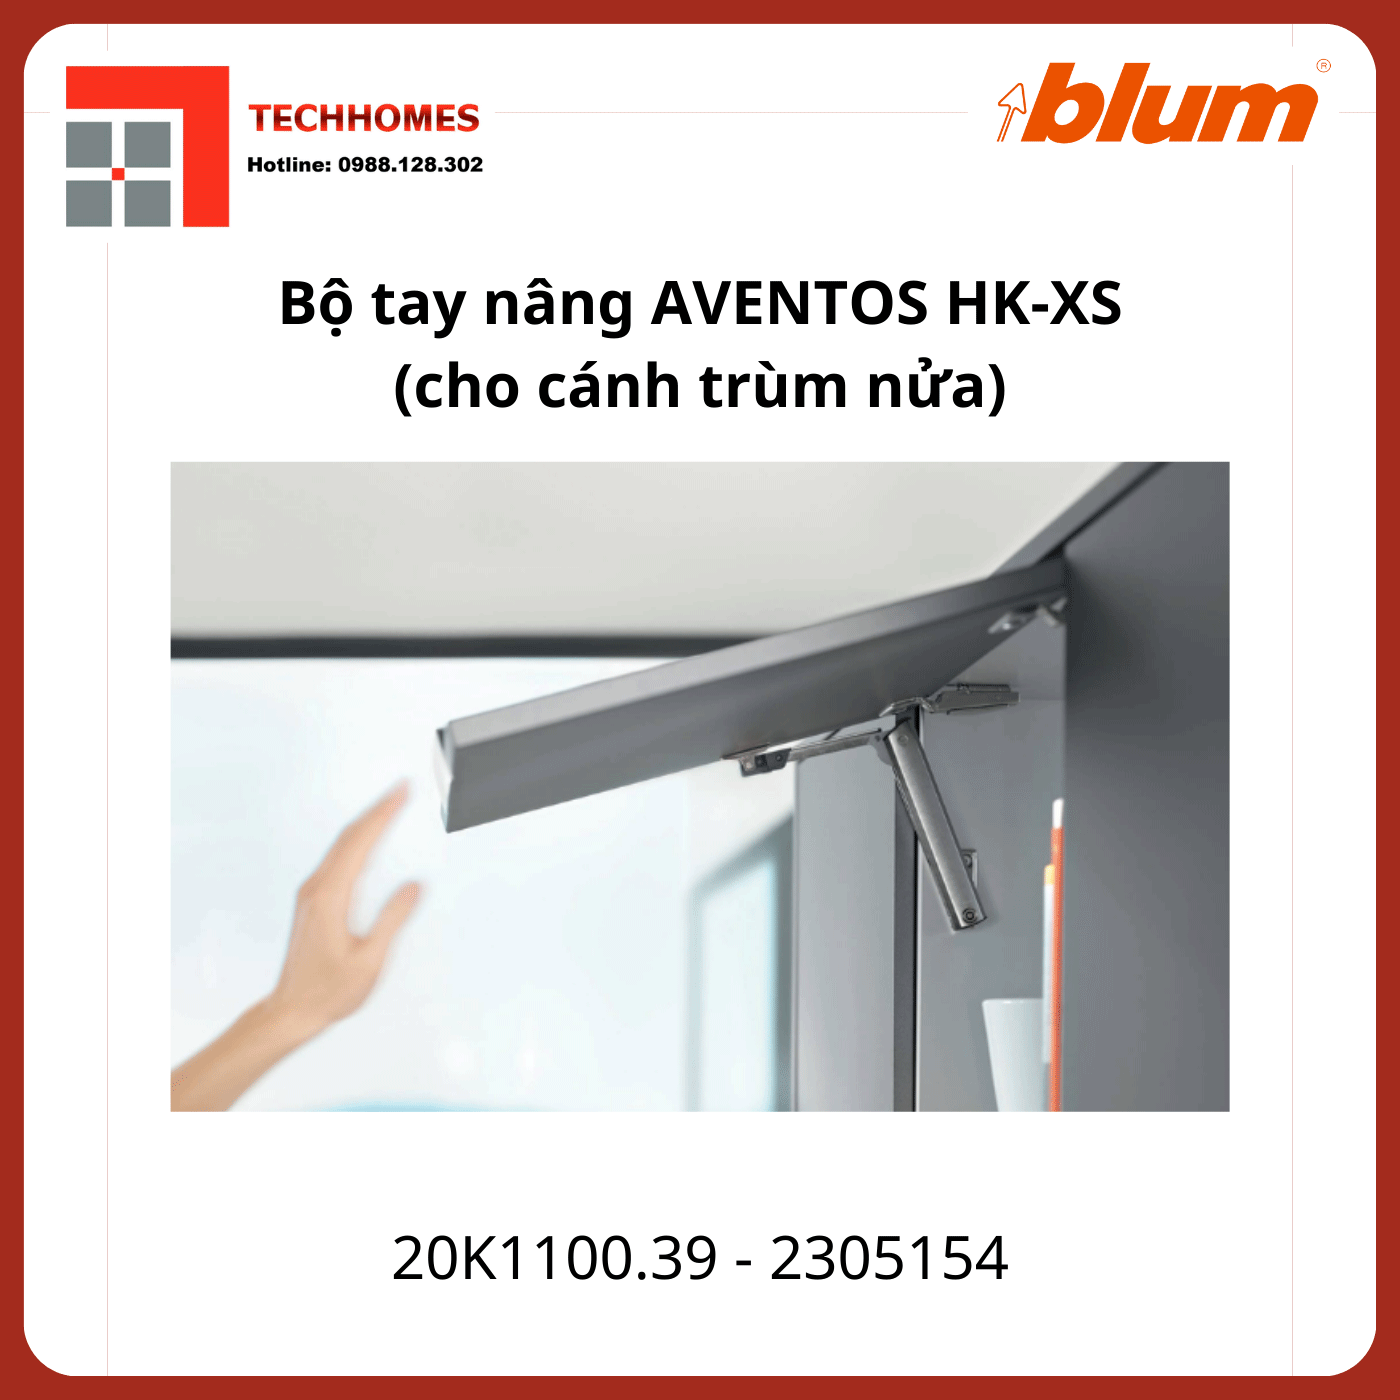 Bộ tay nâng Blum AVENTOS HK-XS 20K1100.39 2305154 - 2305154